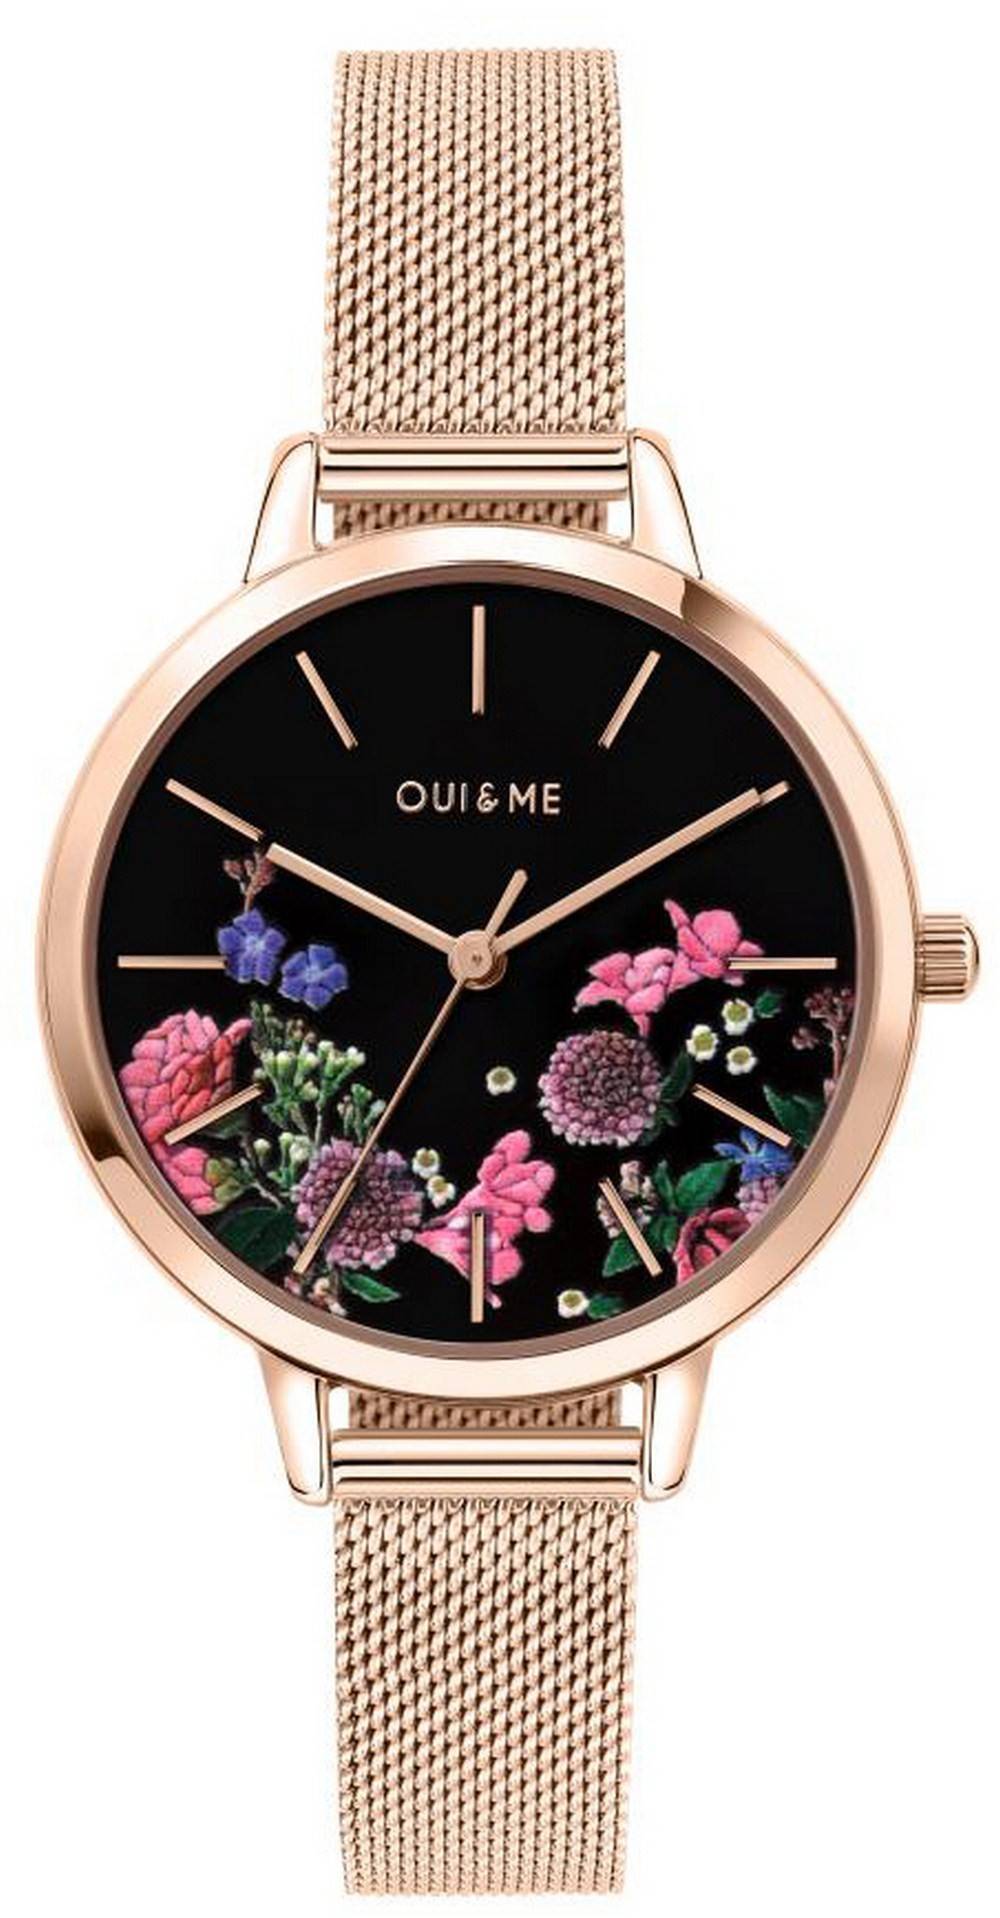 Oui & Me Fleurette Black Dial Rose Gold Tone Stainless Steel Quartz ME010075 Women's Watch